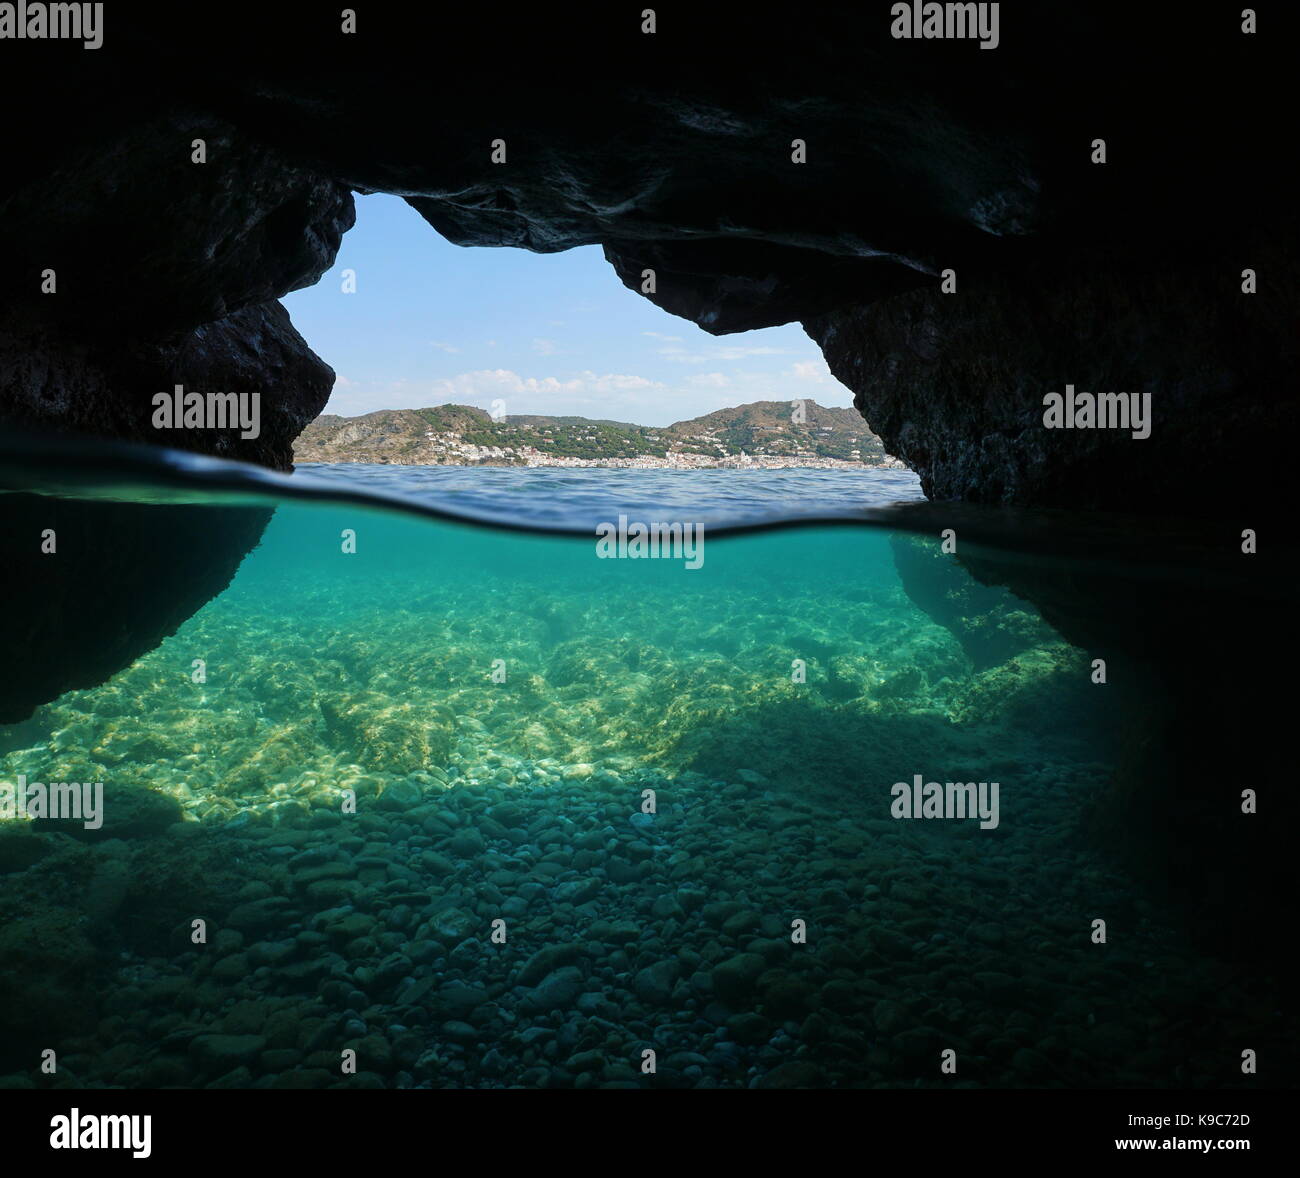 Über und unter dem Meer in eine Höhle an der Küste mit der mediterranen Dorfes El Port de la Selva und Kieselsteinen Unterwasser, Spanien, Costa Brava Stockfoto